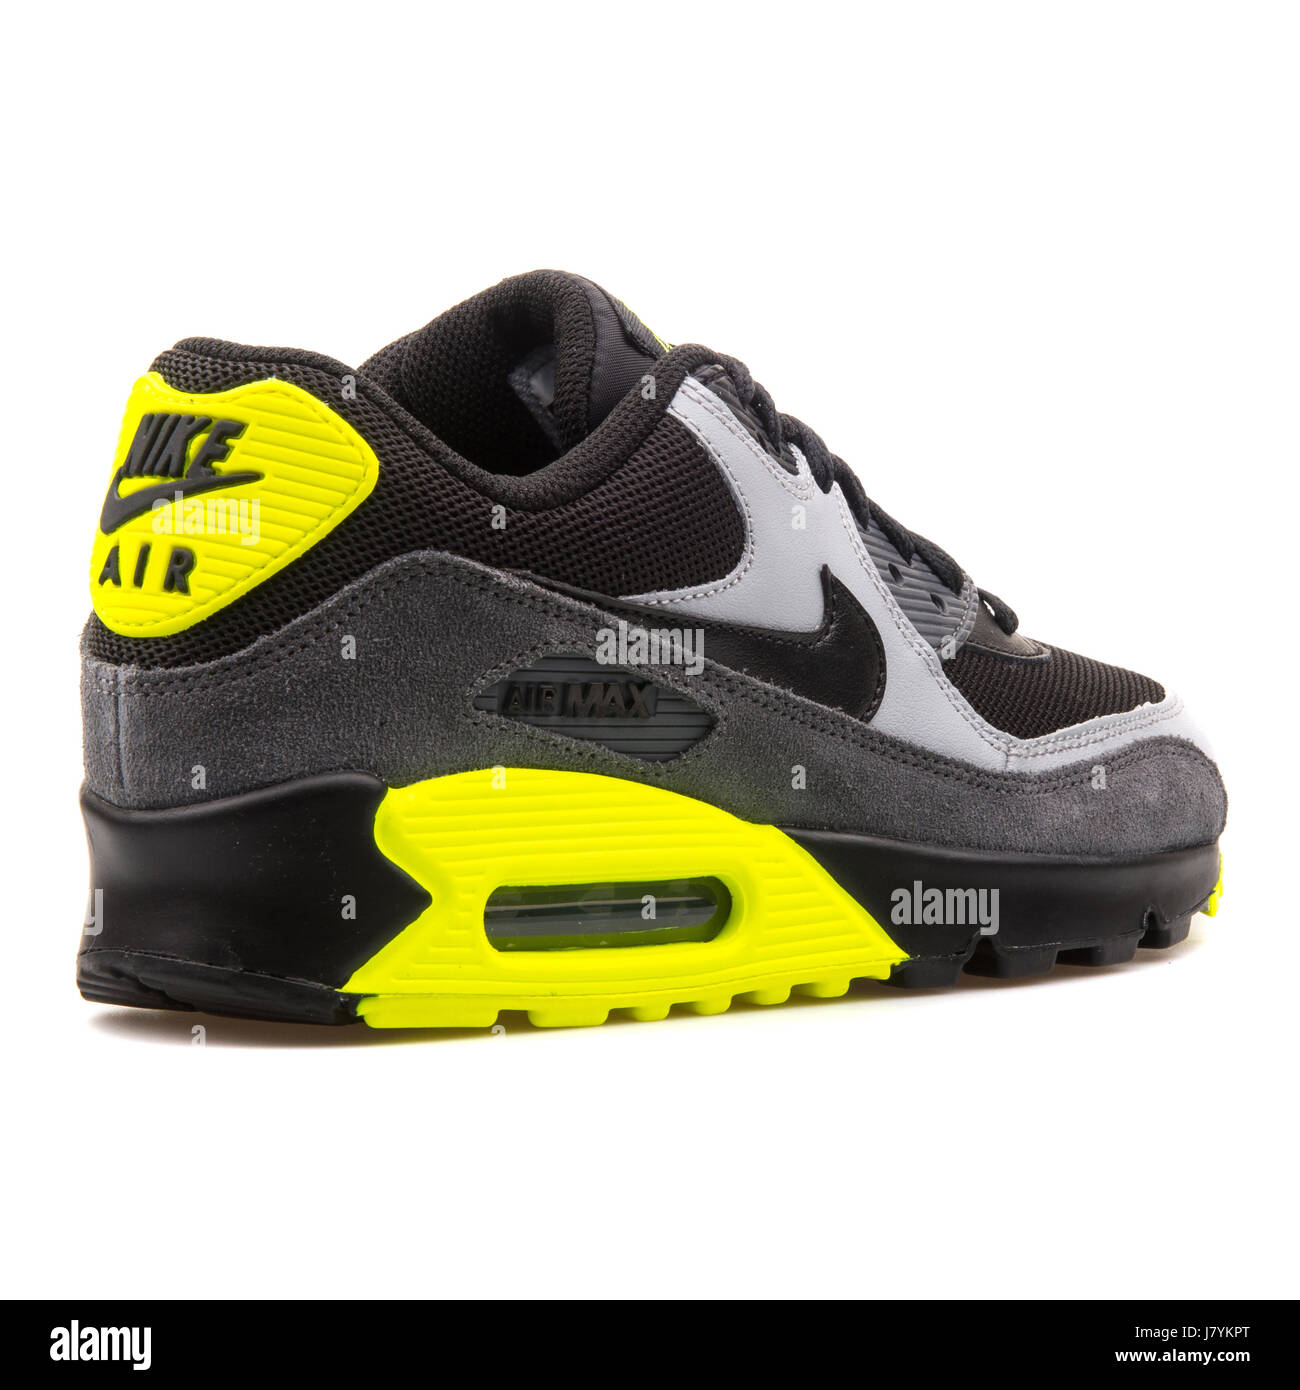 el viento es fuerte En expansión perderse Nike Air Max 90 Malla (GS) la juventud negra de cuero gris y amarillo  Sneakers - 724824-002 Fotografía de stock - Alamy